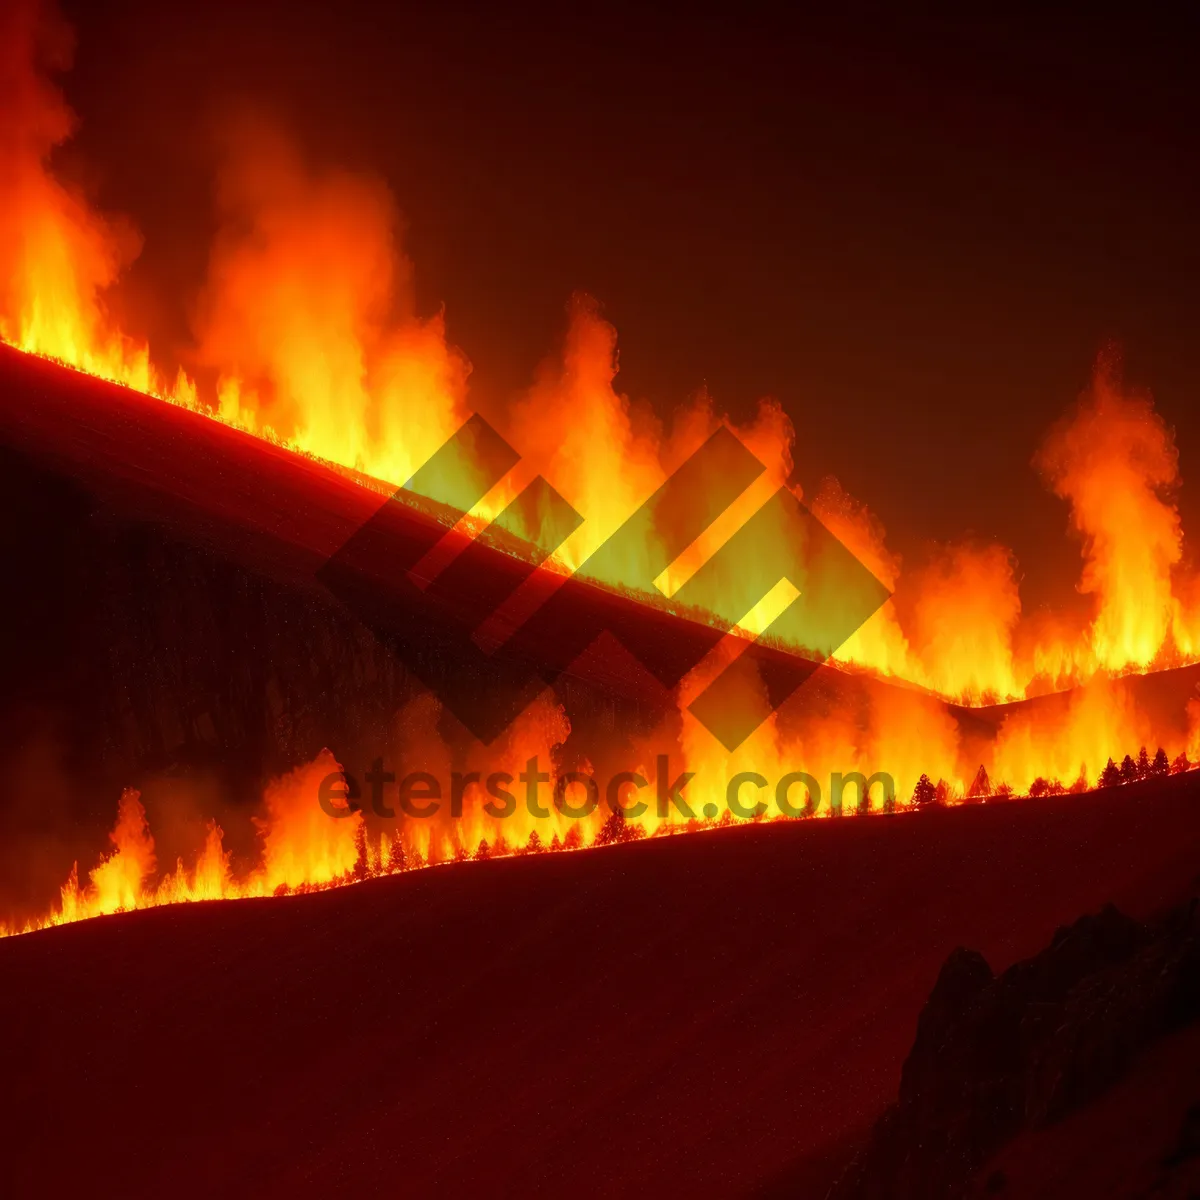 Picture of Fiery Blaze: Intense Heat, Orange Flames, and Danger